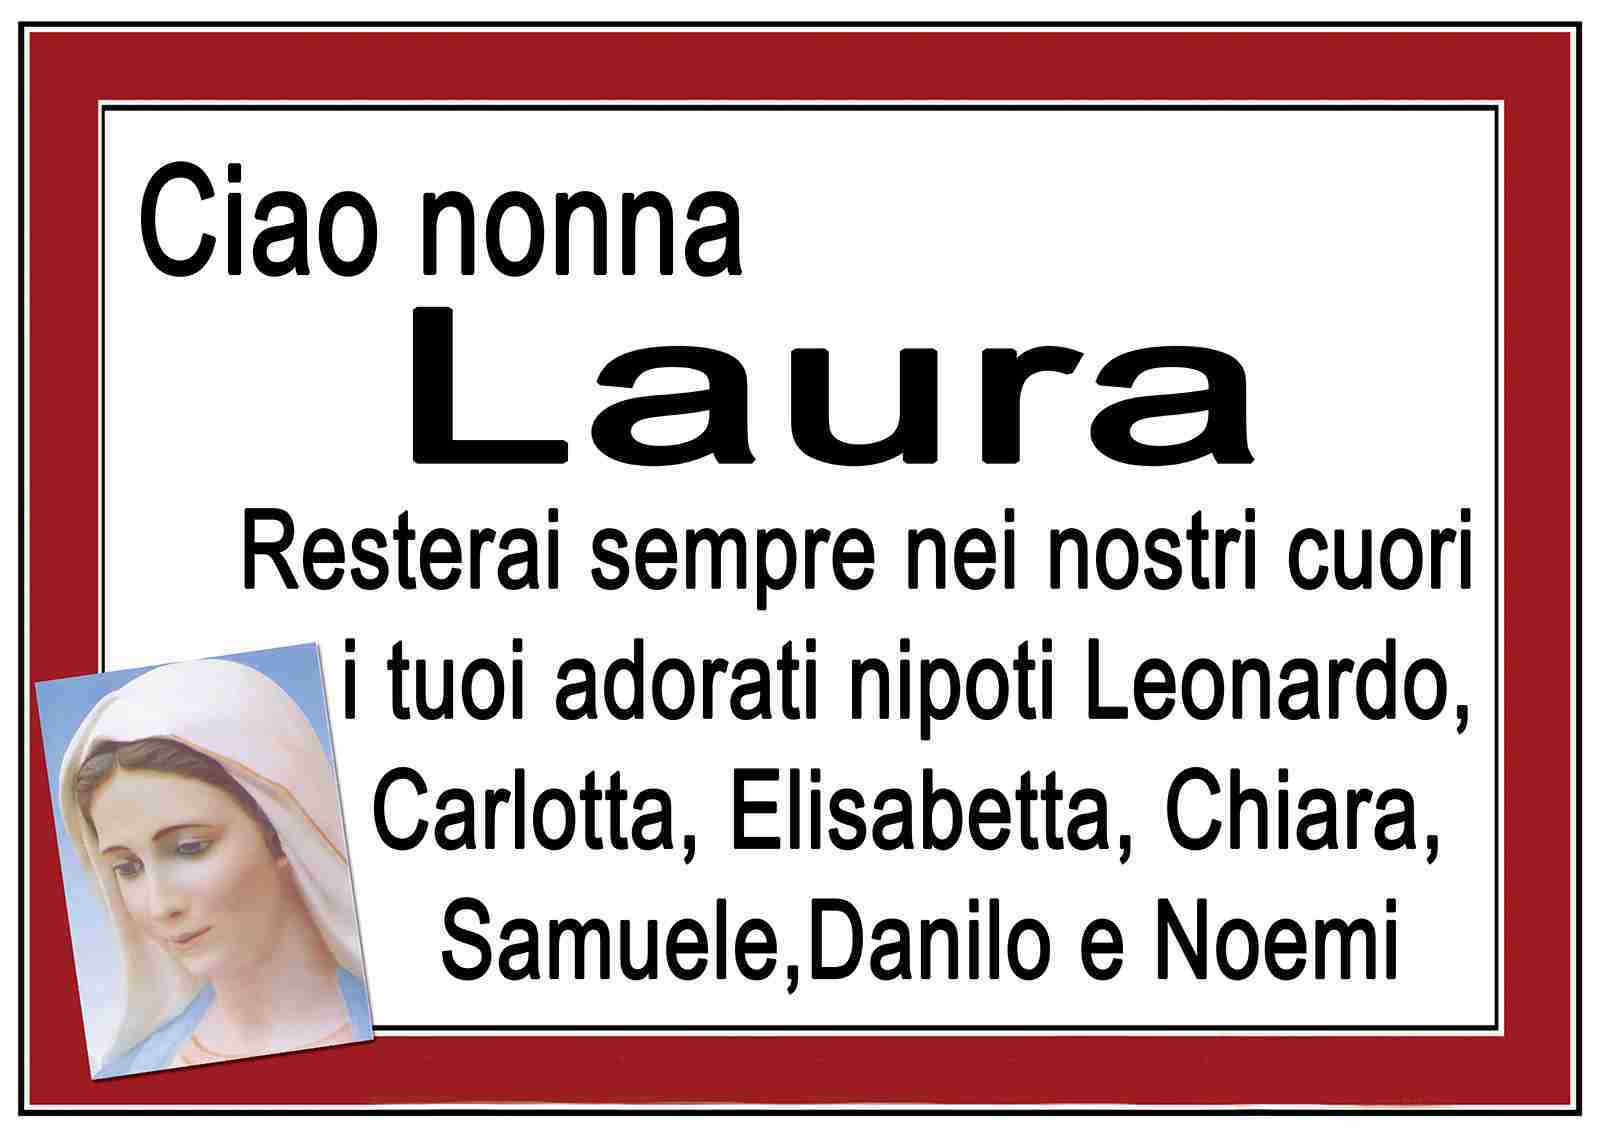 Maria Laura Zara